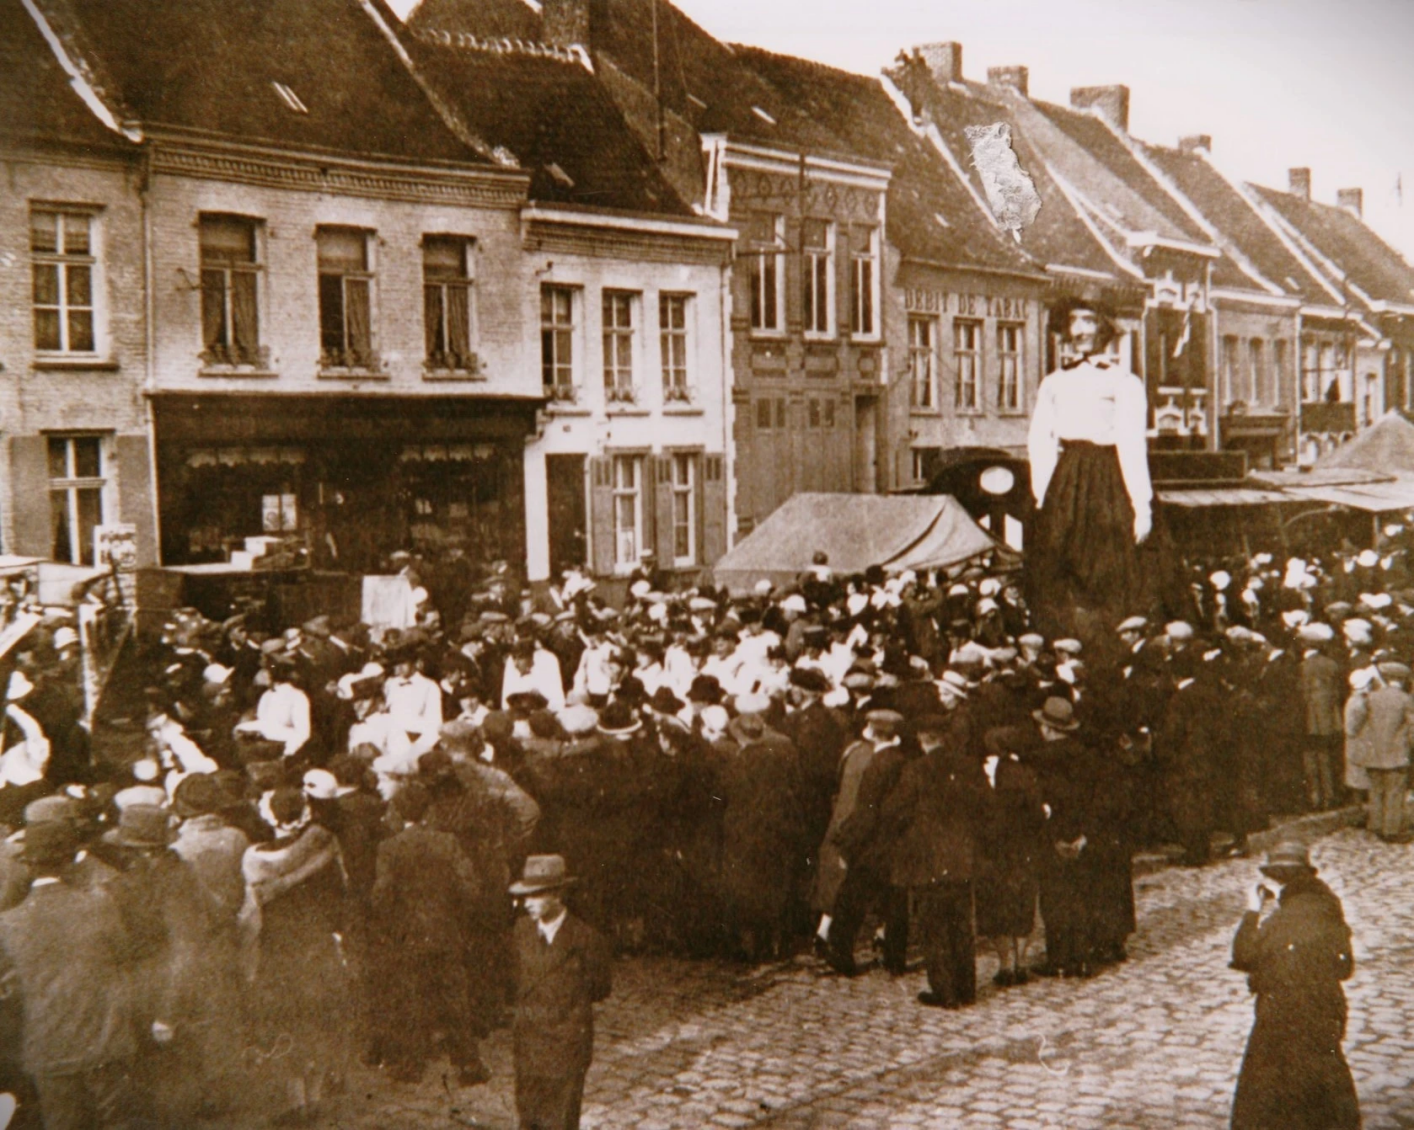 Steenvoorde Carnival early 20th century